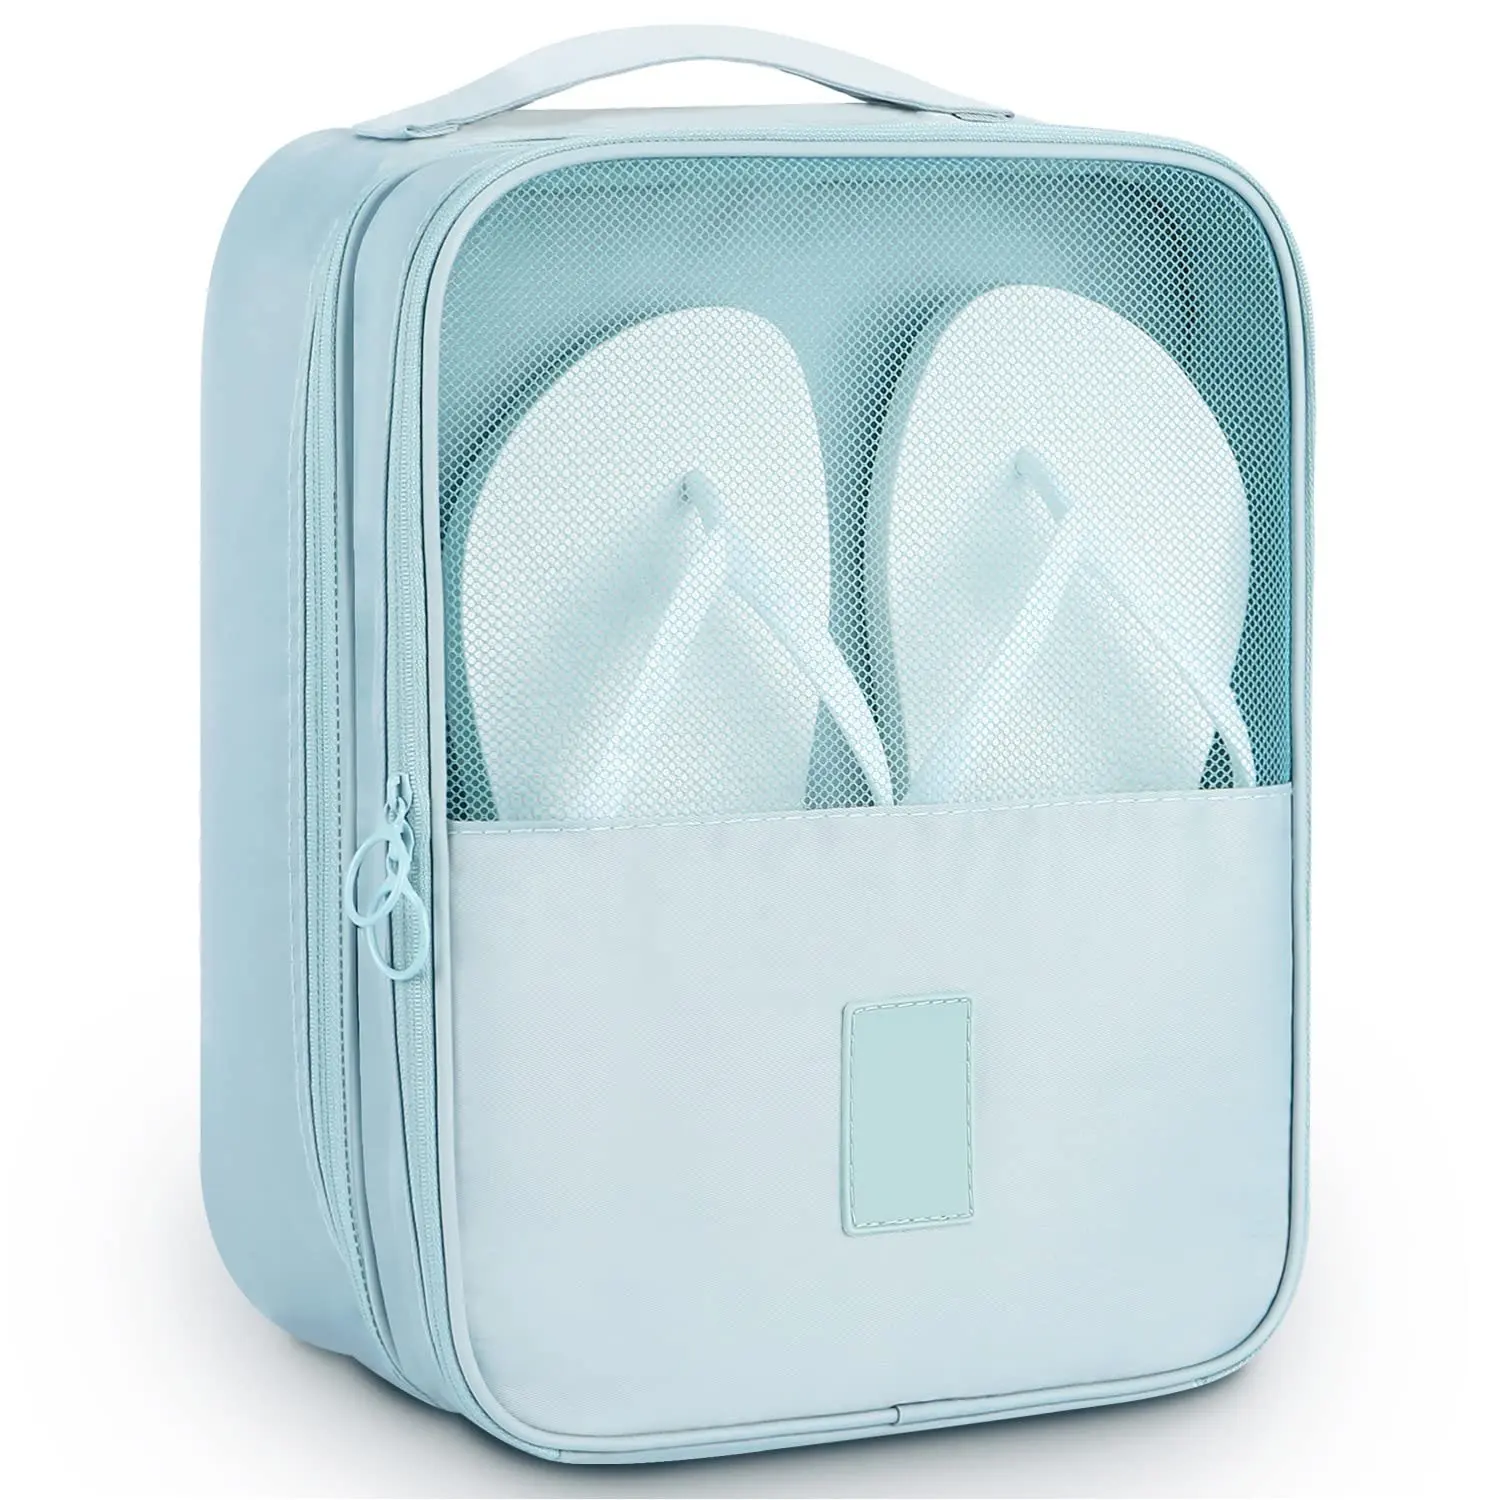 La borsa per scarpe portatile contiene 3 paia di scarpe per il viaggio e la custodia per l'uso quotidiano